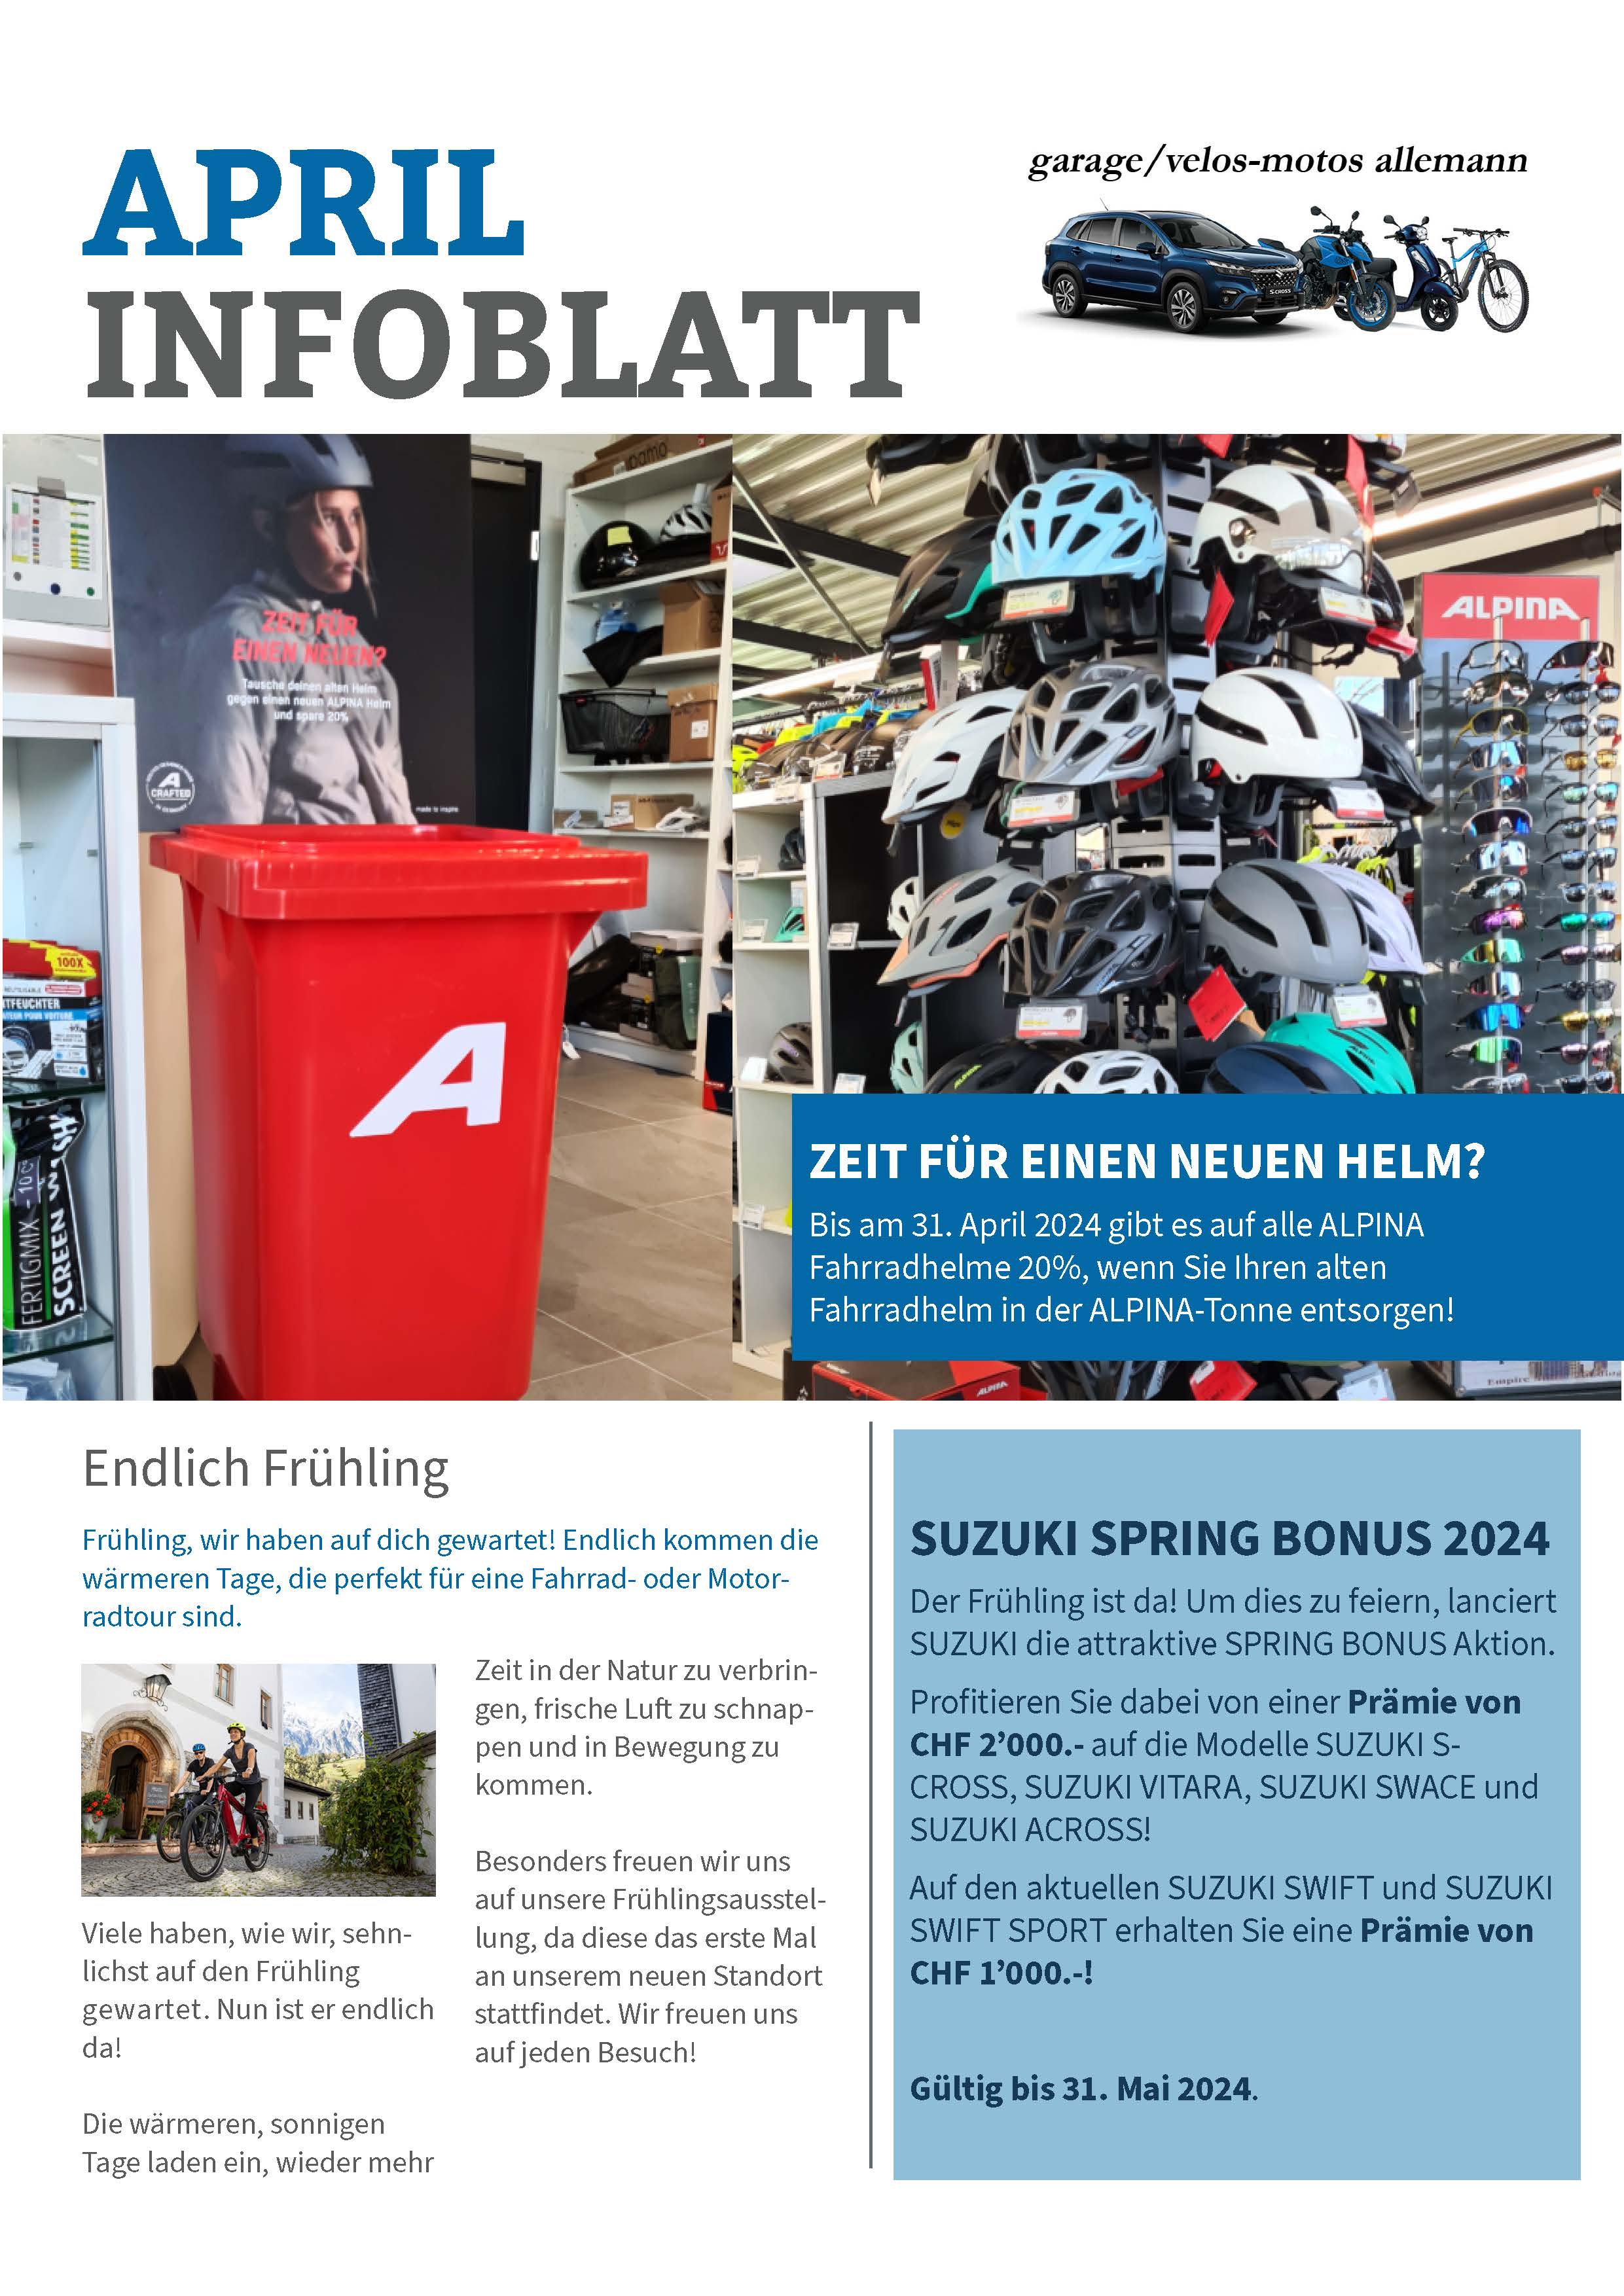 Infoblatt Garage Allemann AG, April 2024